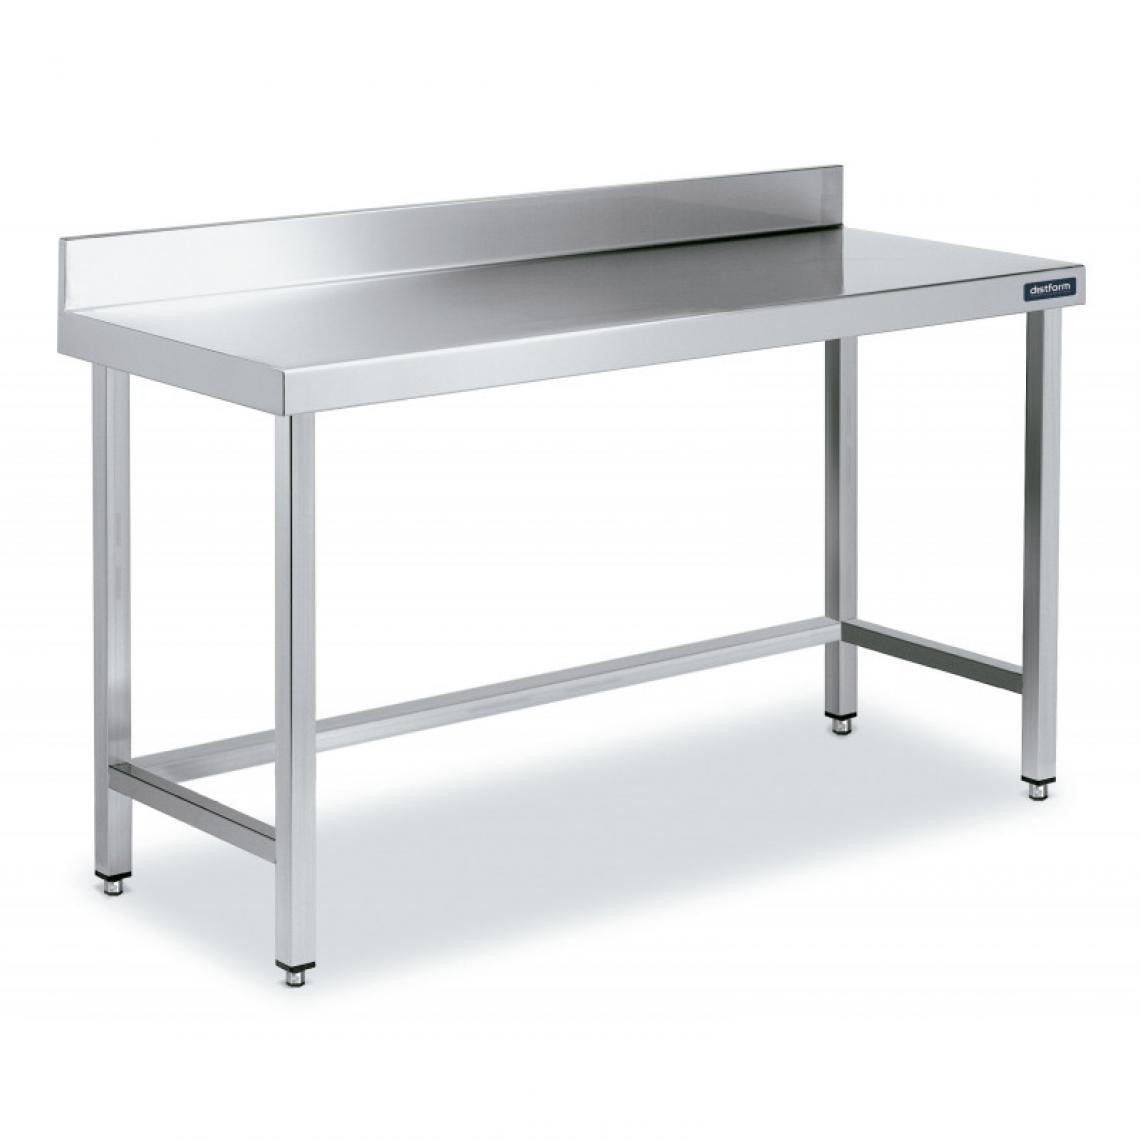 DISTFORM - Table Inox de Travail avec Dosseret Gamme 900 - Distform - Acier inoxydable1700x900 - Tables à manger